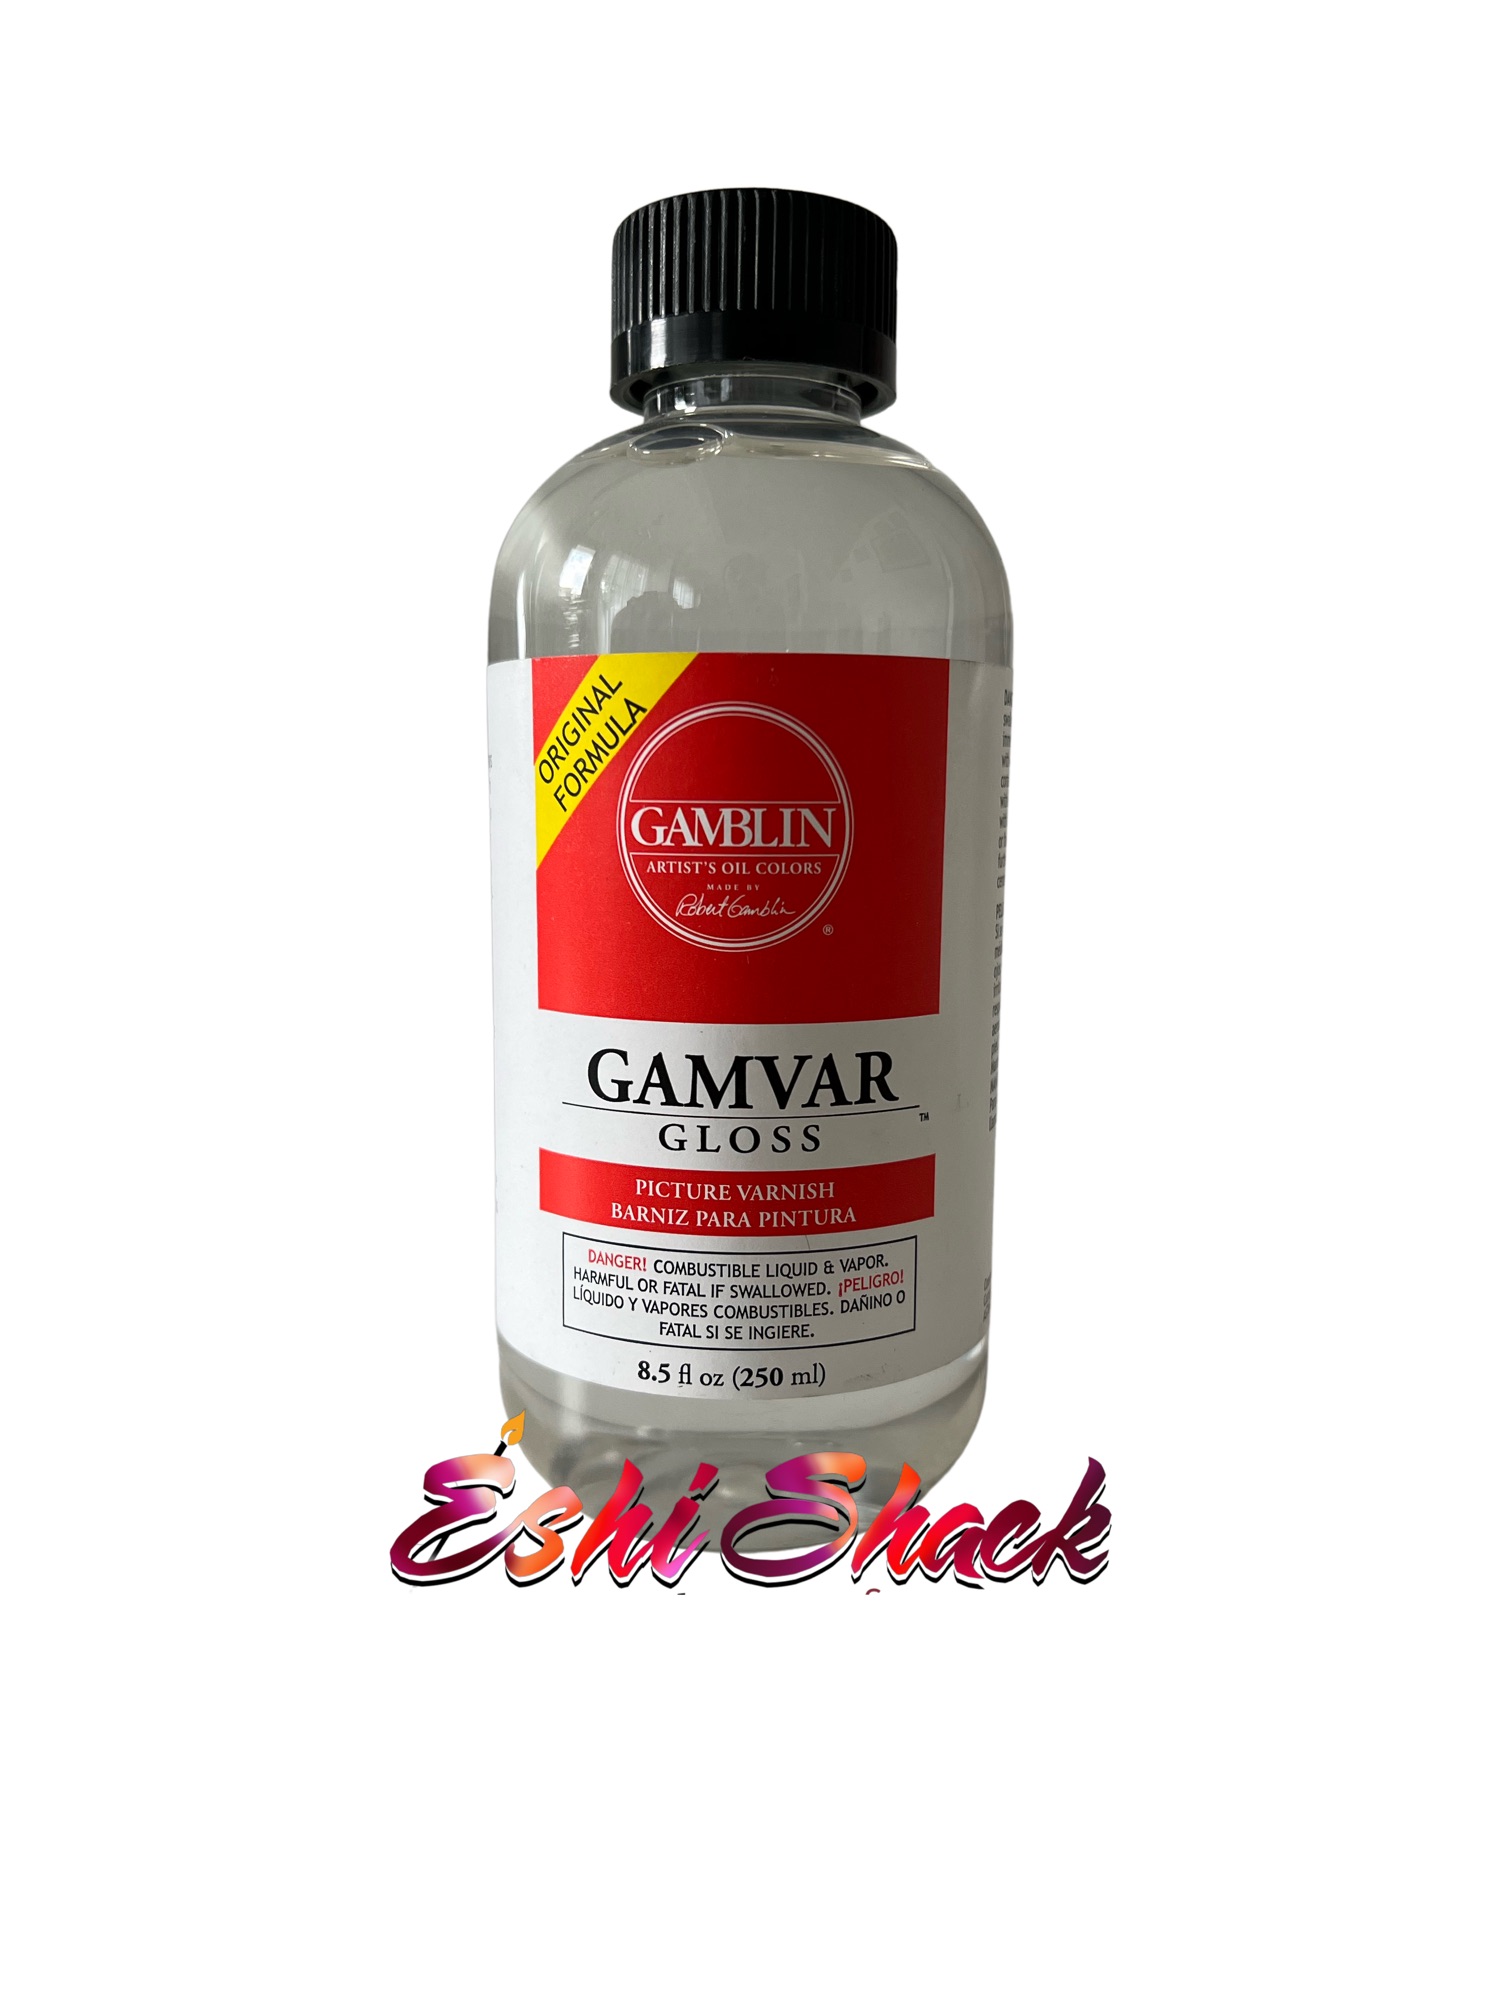 Gamblin Gamvar Gloss Varnish - 8.5 oz bottle